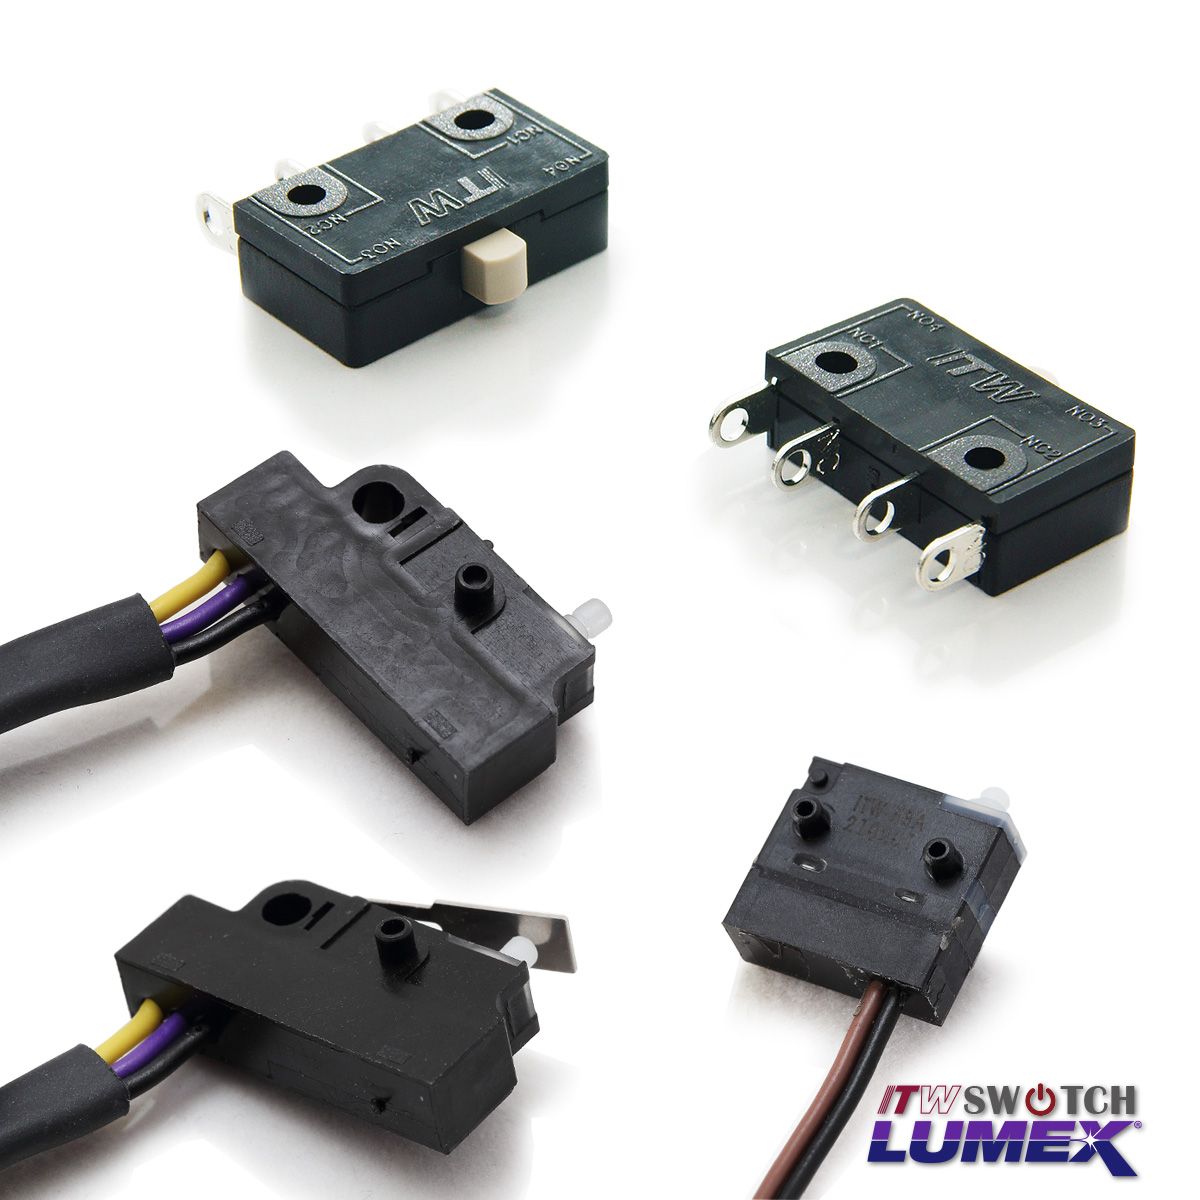 ITW Lumex Switchпредоставляет микропереключатели как часть своих продуктовых предложений.